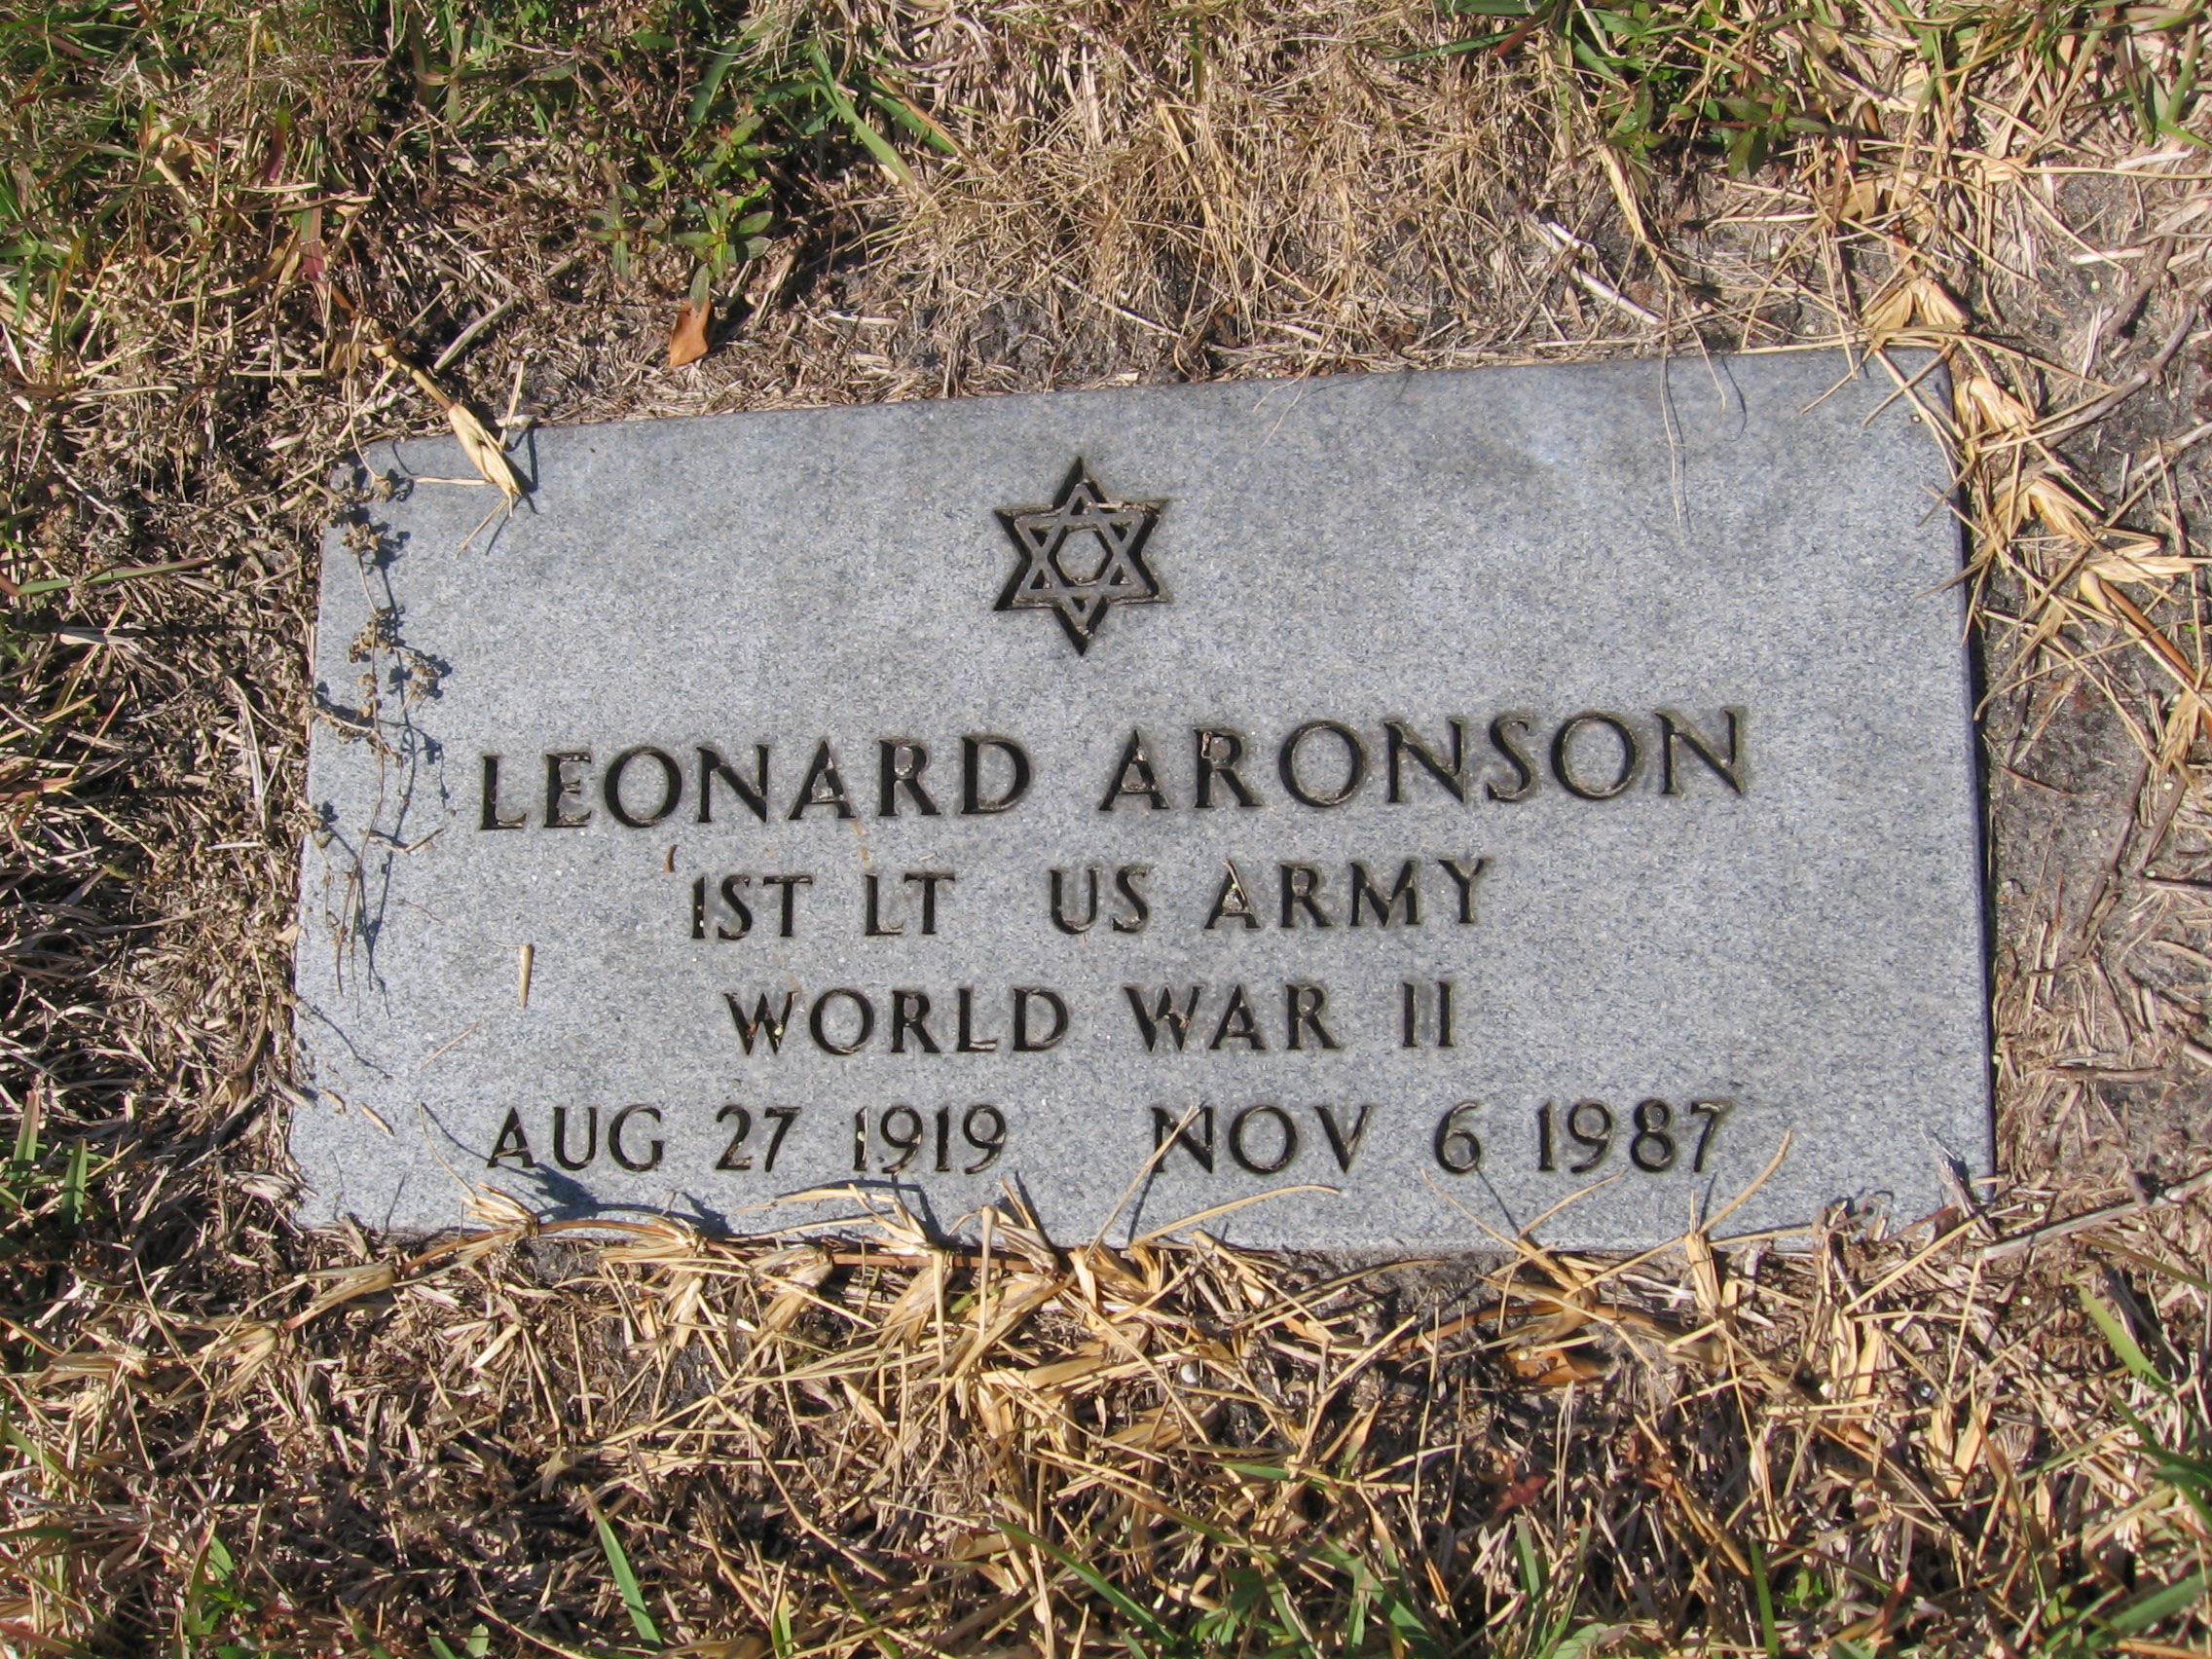 Lieut Leonard Aronson